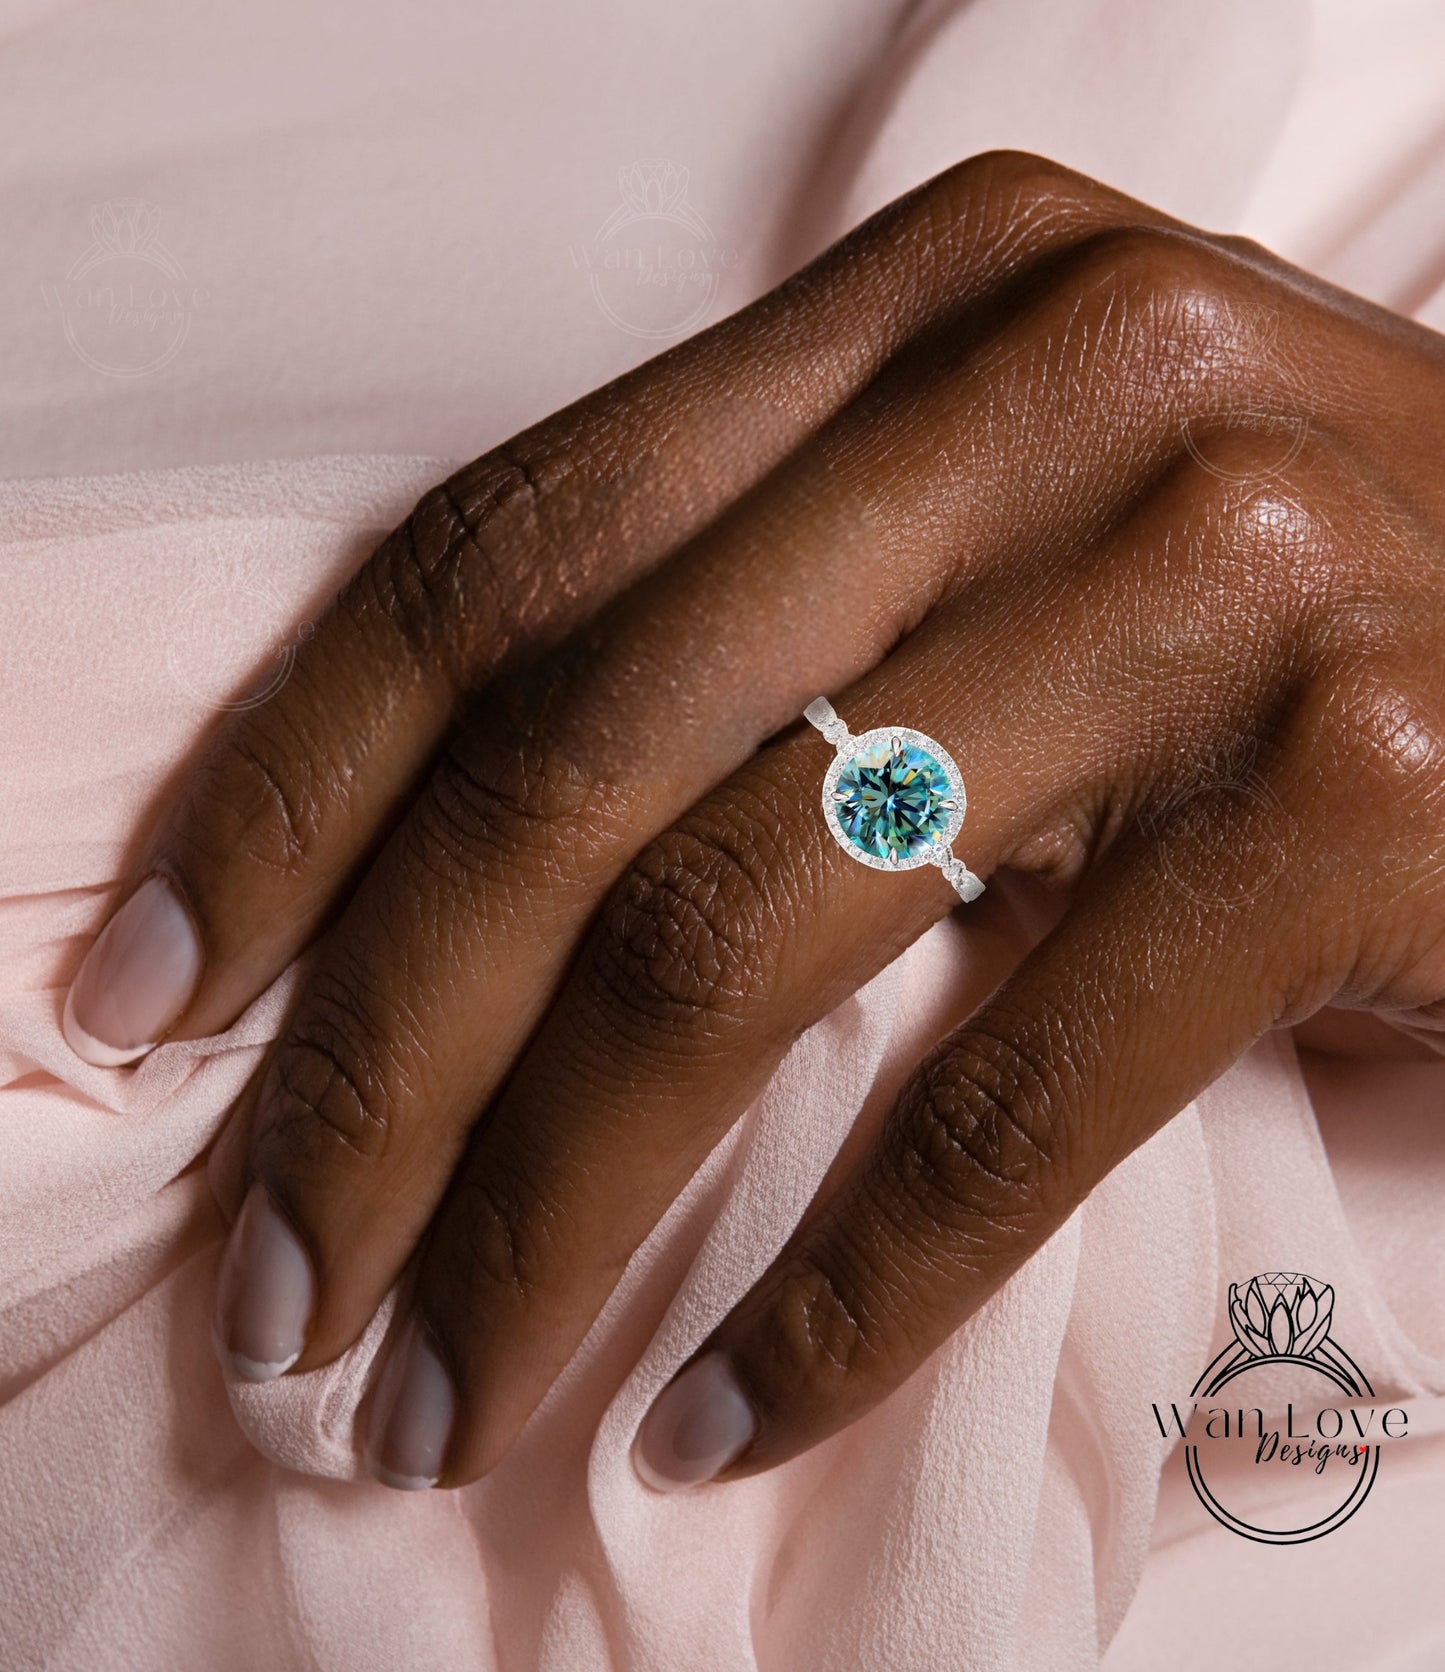 Round Halo Teal Blue Green Moissanite Engagement Ring, Diamond/Moissanite Halo Wedding Ring, Scalloped Leaf Diamond Milgrain Shank Band Custom Ring, 14k/18k Gold Wan Love Designs